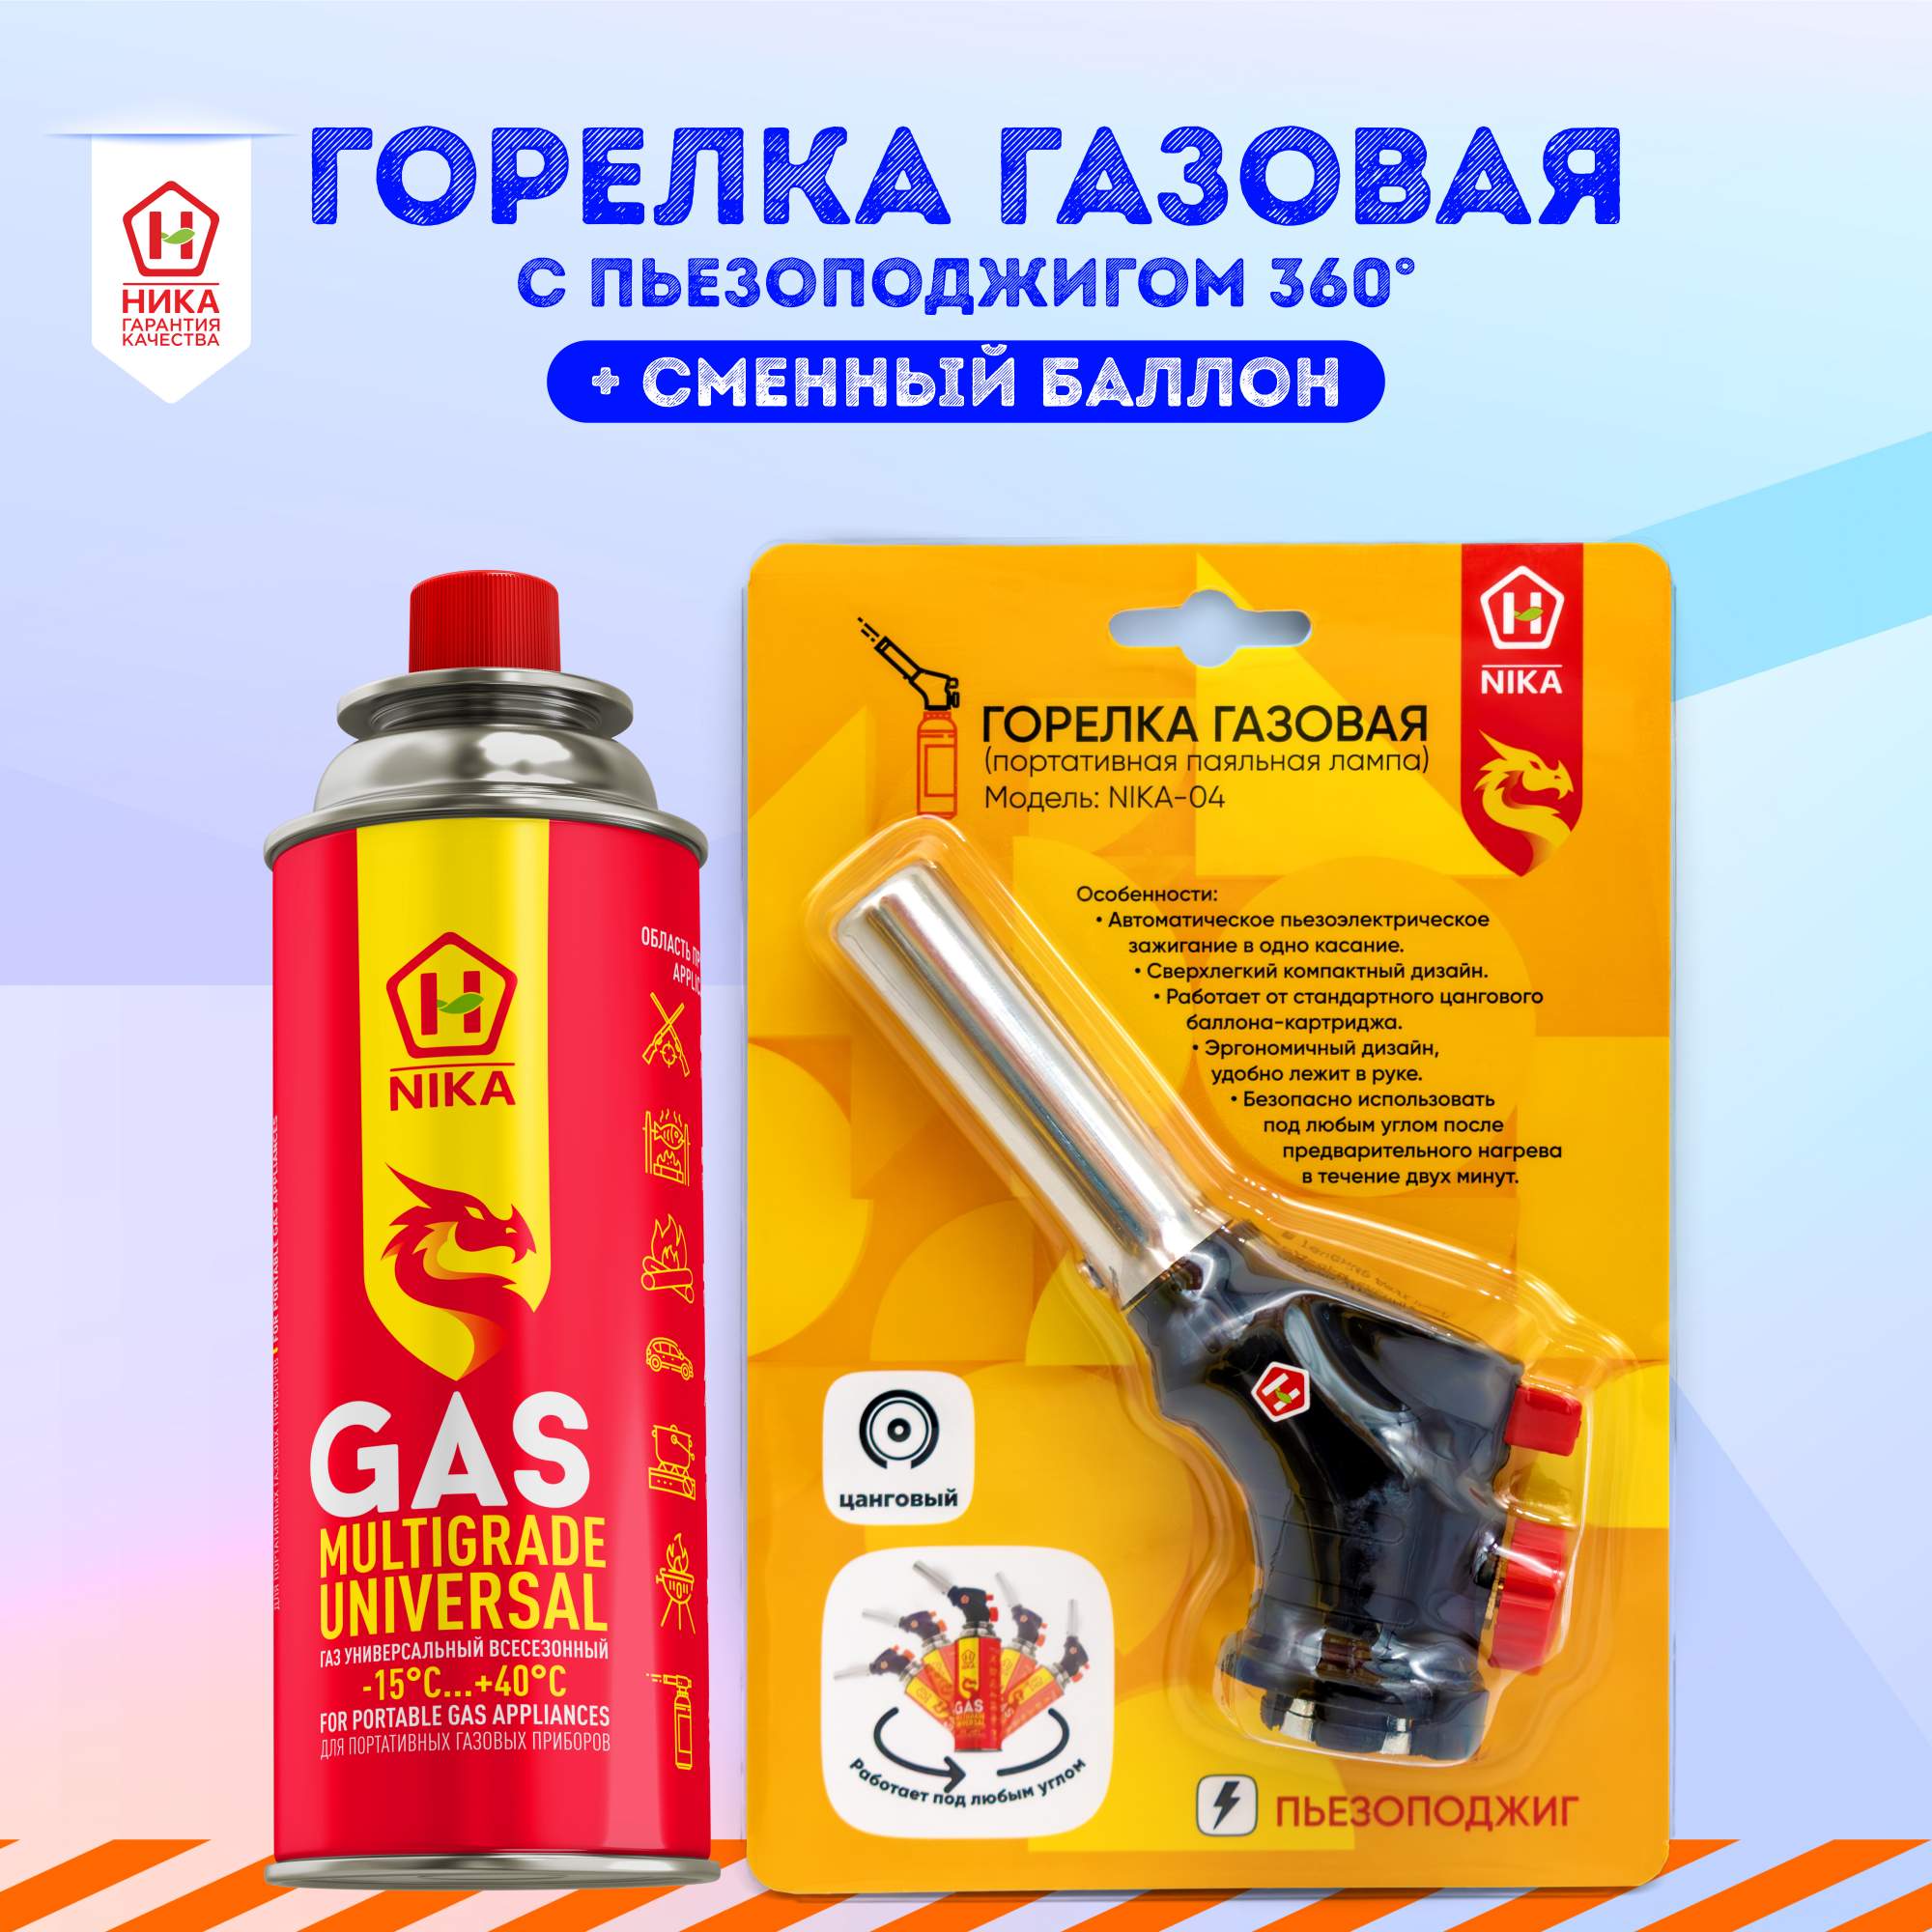 Туристическая газовая горелка зажигалка с пьезоподжигом +1 баллон газа Nika